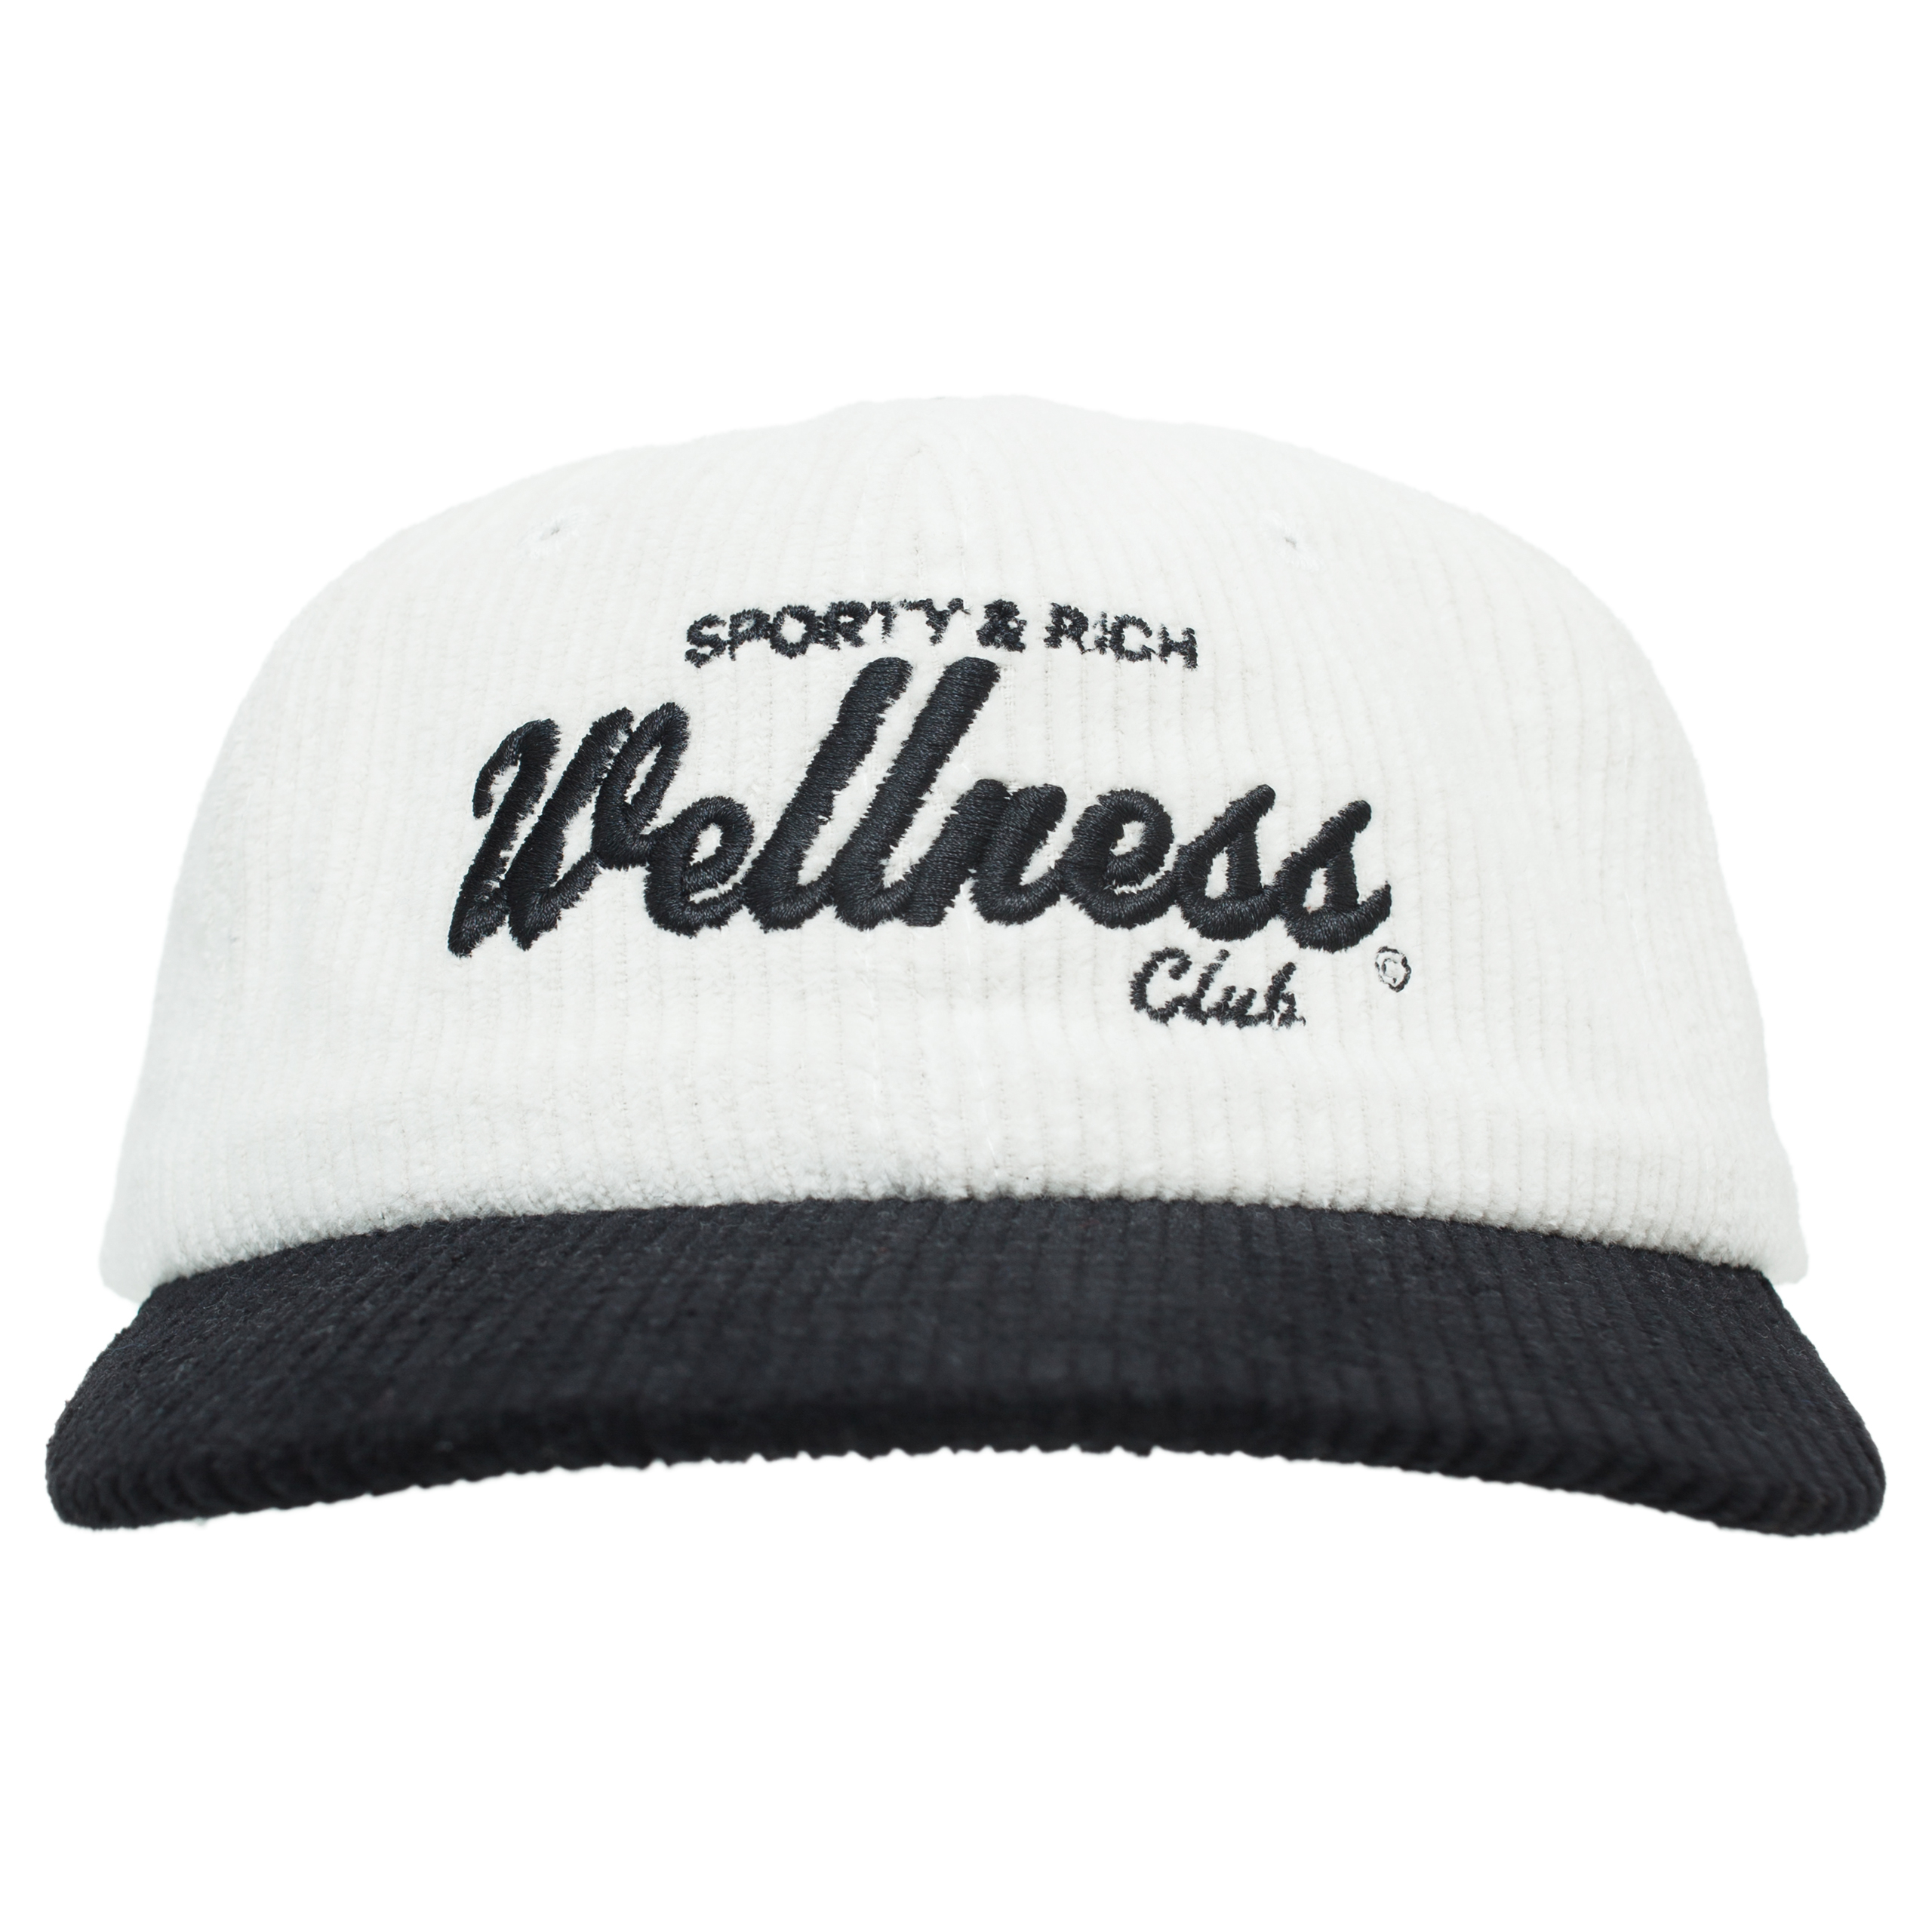 Вельветовая кепка Wellness Club SPORTY & RICH AC833BK, размер One Size